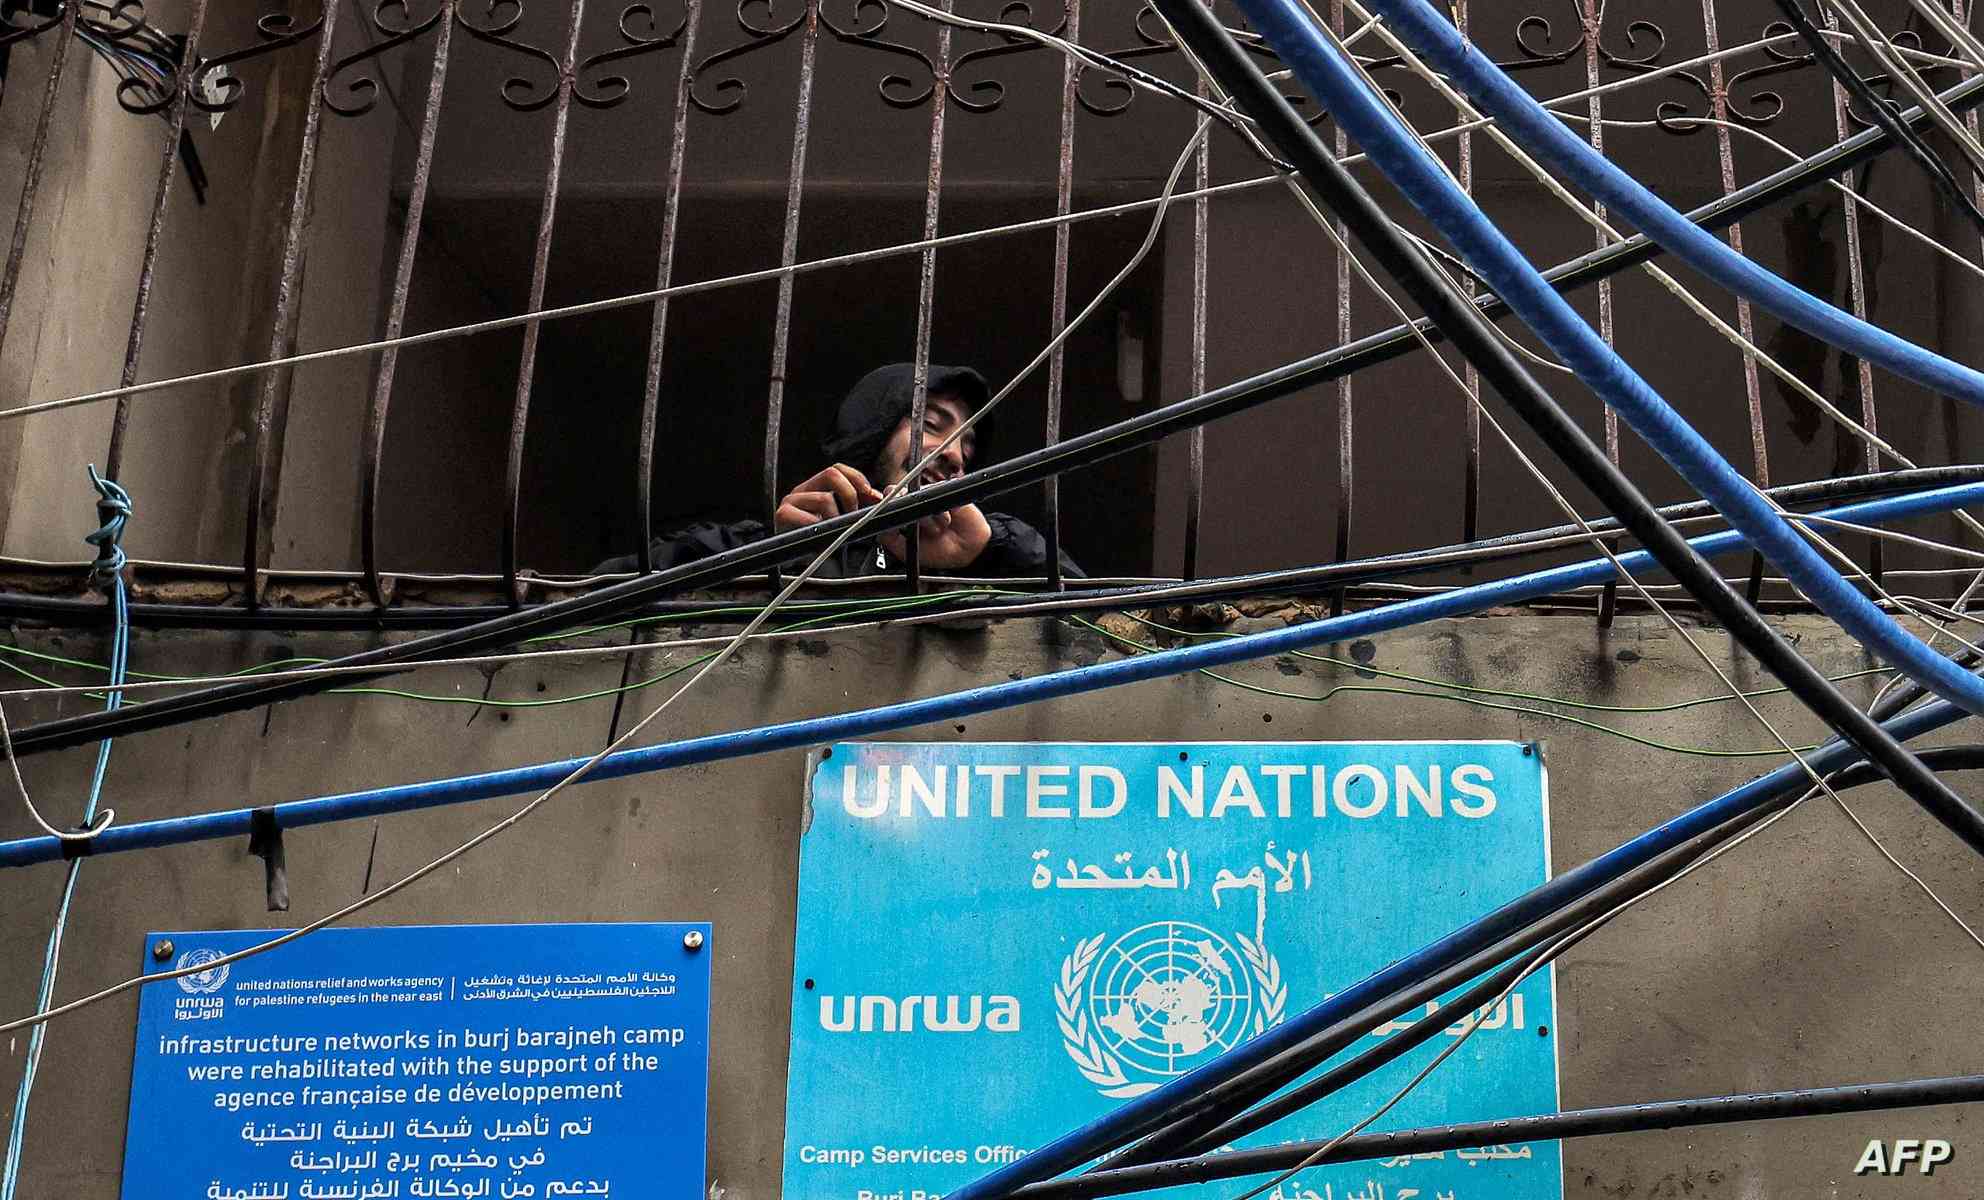 قرار عاجل من الأمم المتحدة بشأن الأونروا